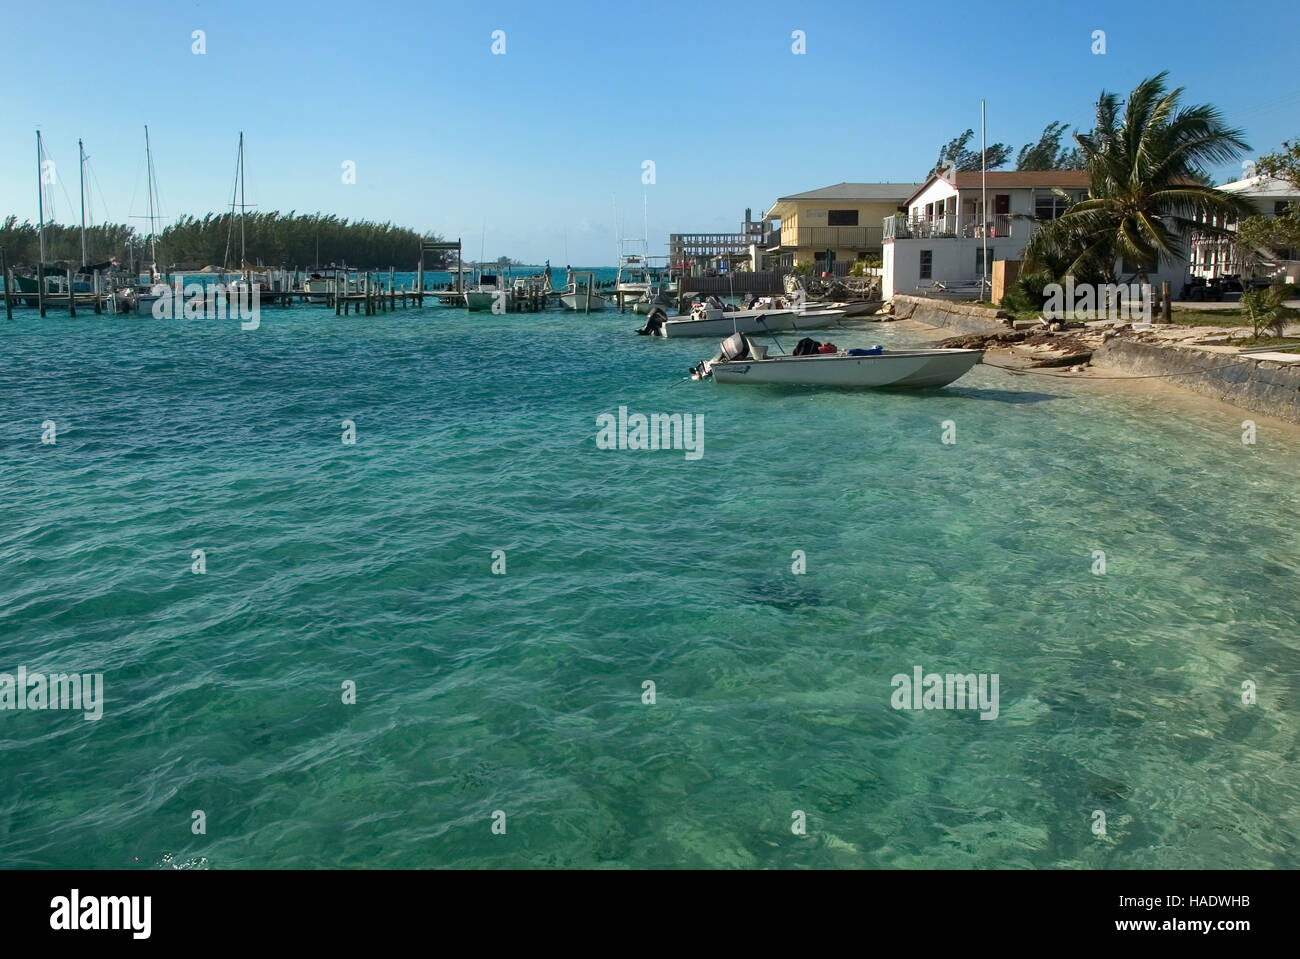 Bimini harbor along the King's Highway in Alice Town on the tiny Caribbean island of Bimini, Bahamas Stock Photo